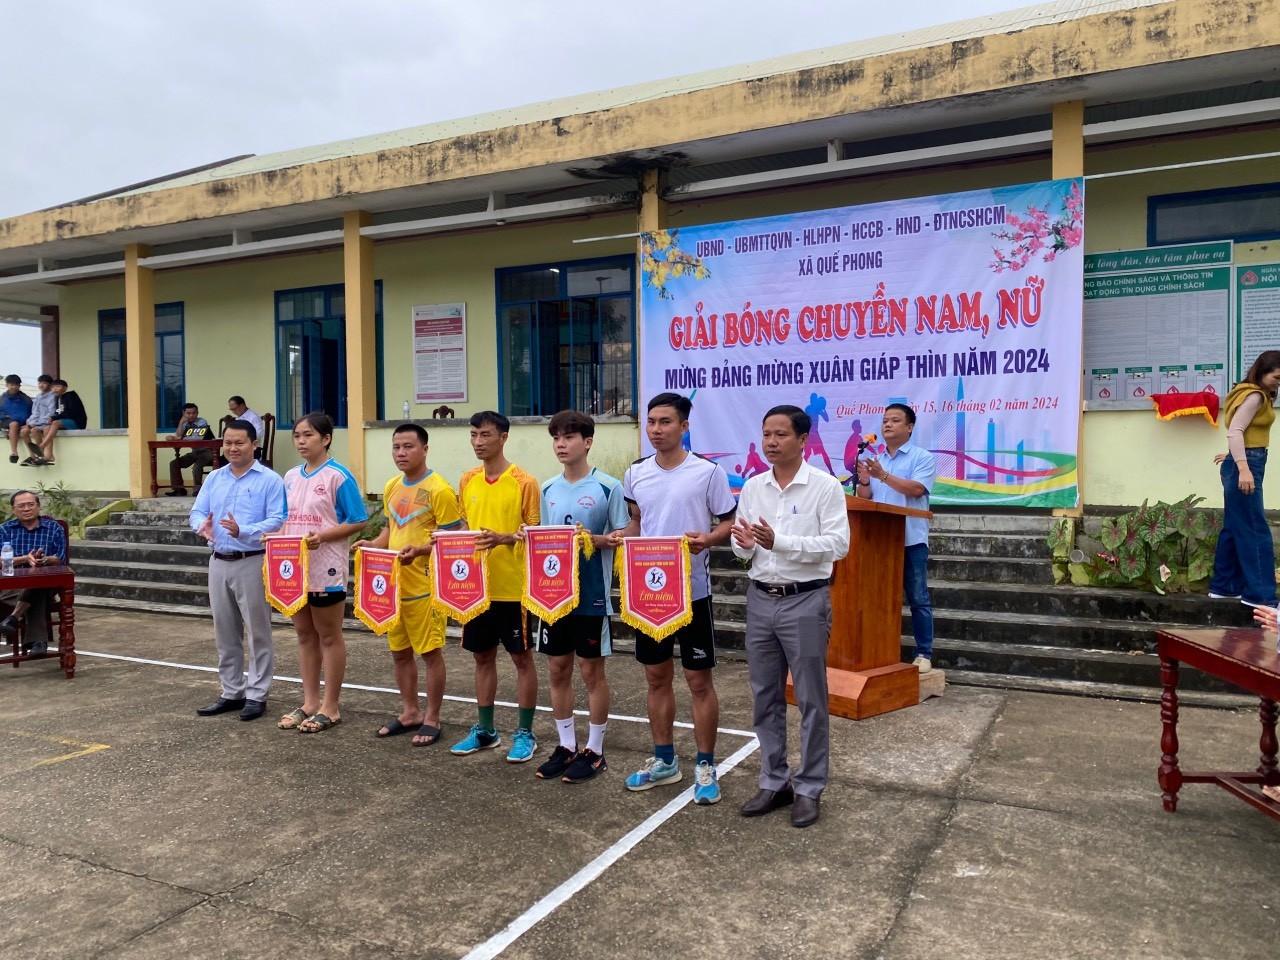 Xã Quế Phong tổ chức giải bóng chuyền nam, nữ " Mừng Đảng, Mừng Xuân" Giáp Thìn năm 2024